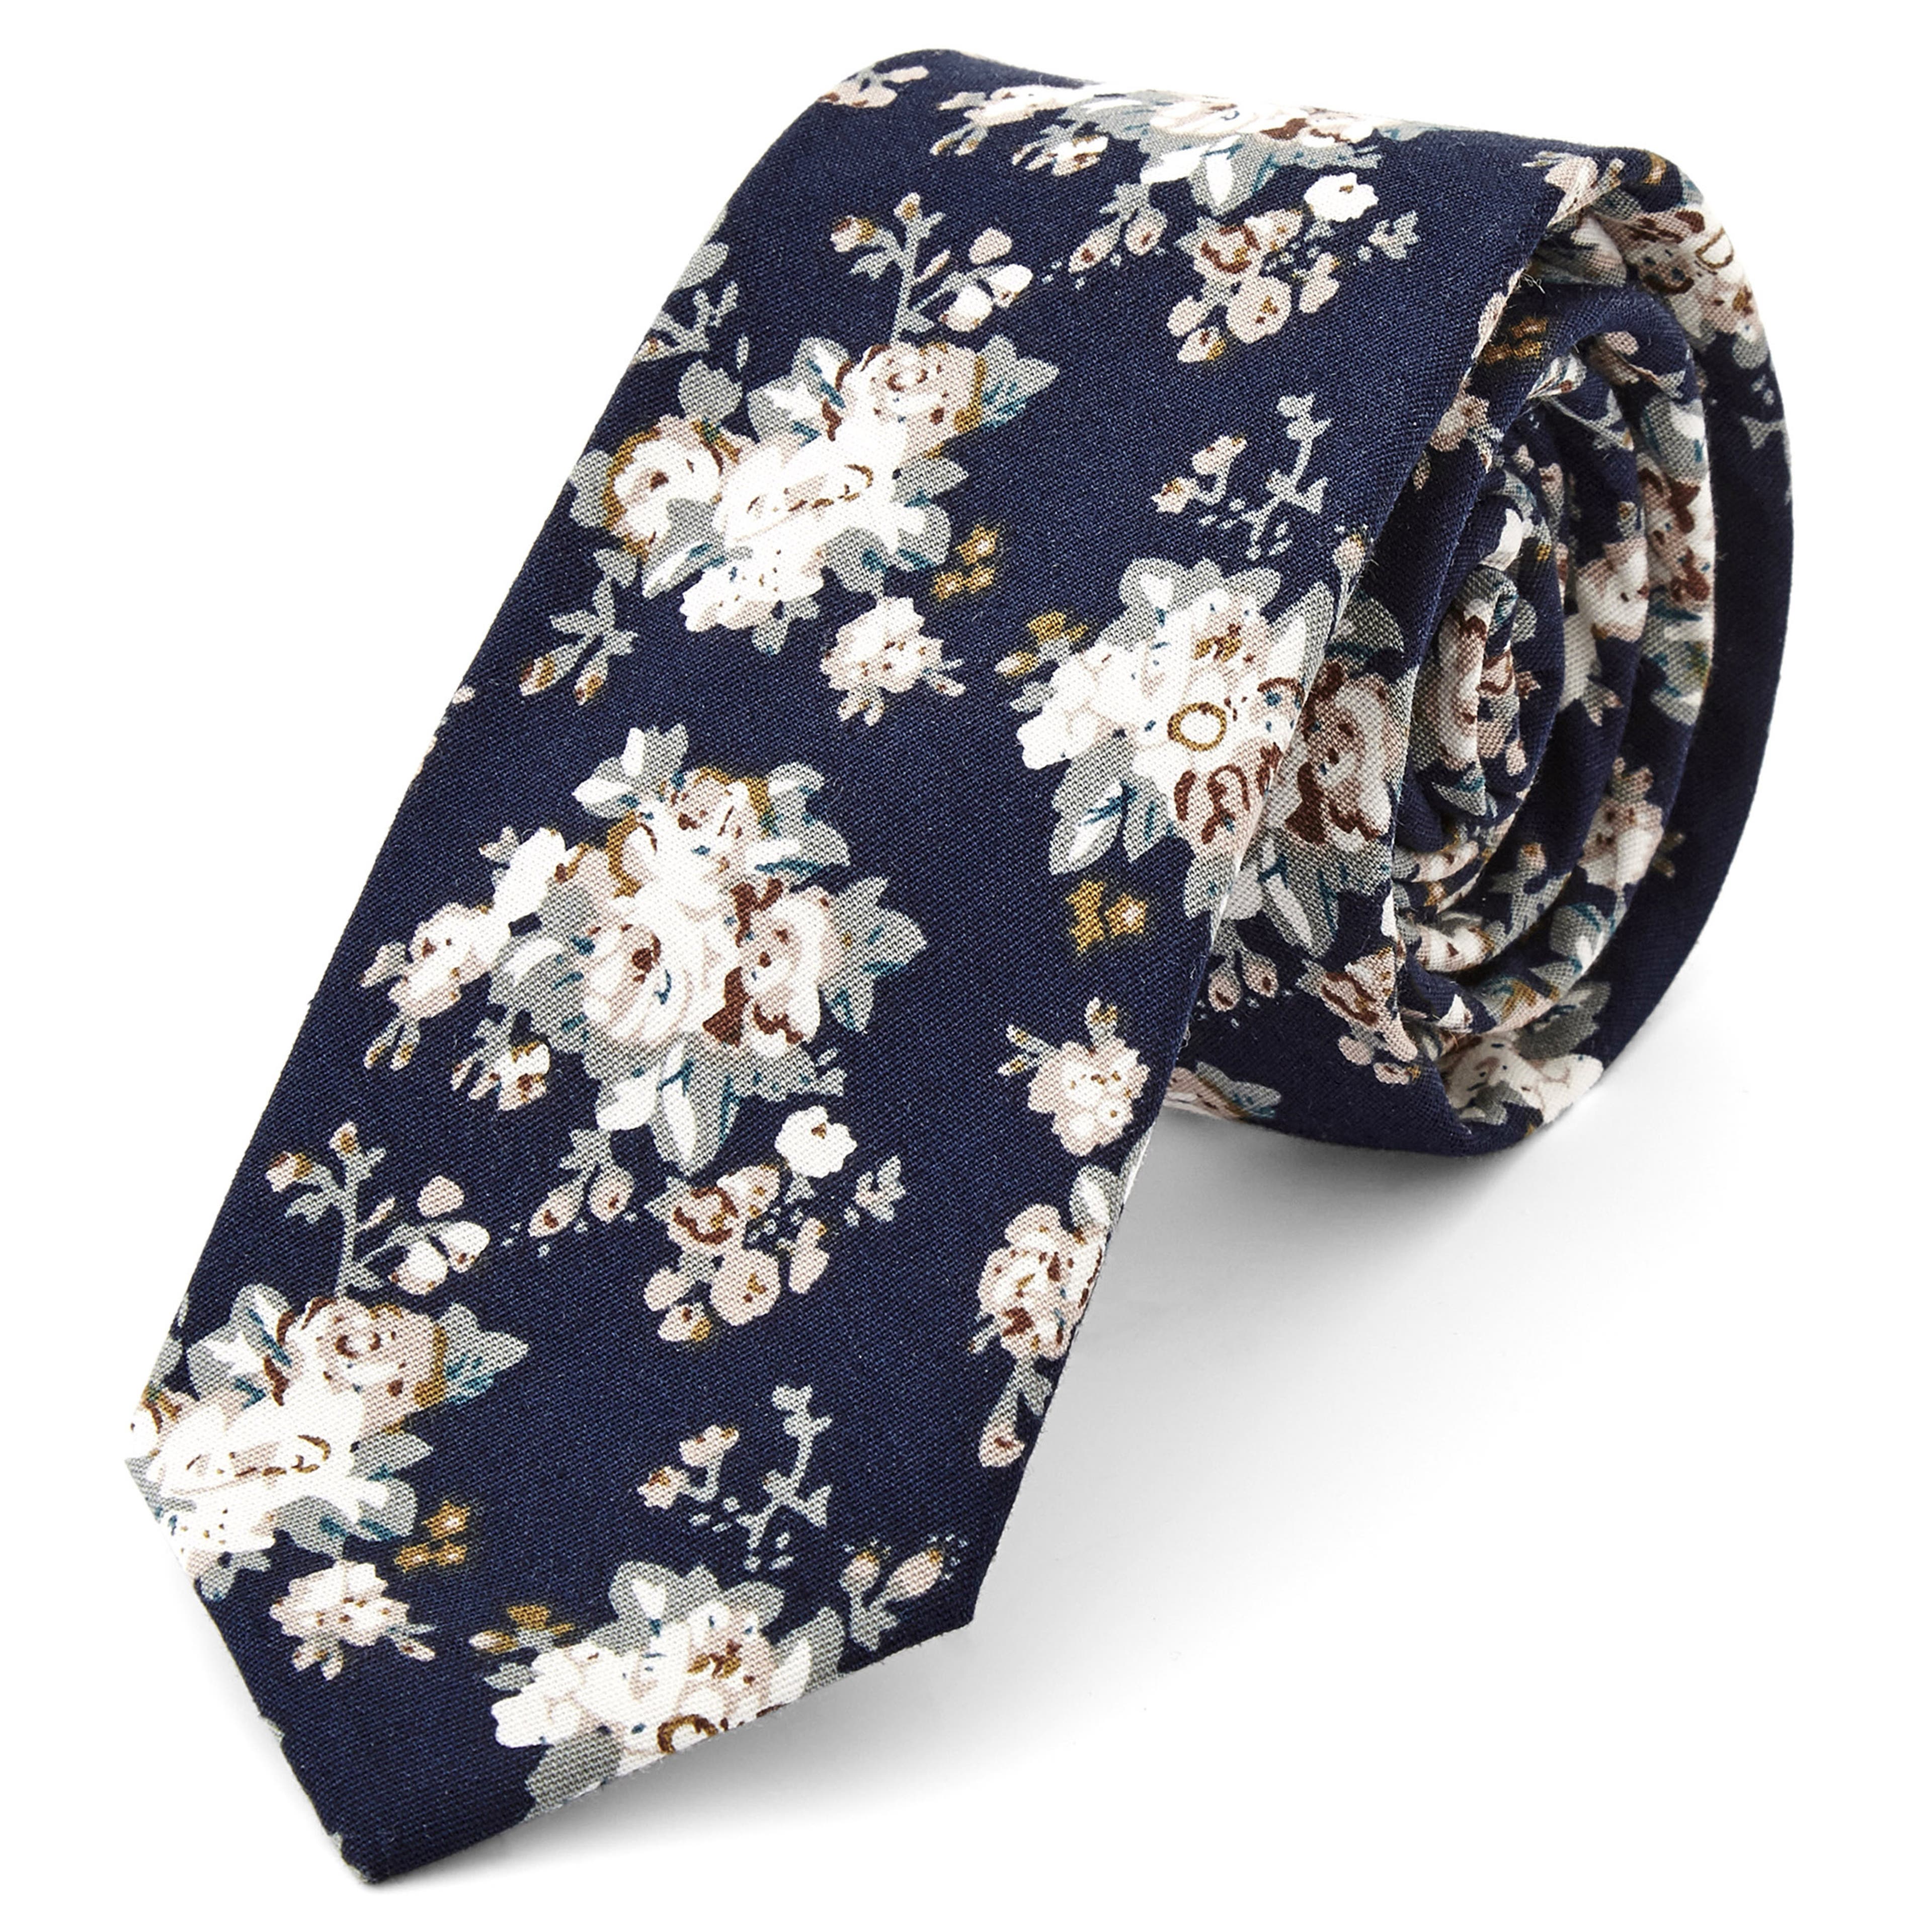 Kék alapon fehér virágmintás pamut nyakkendő